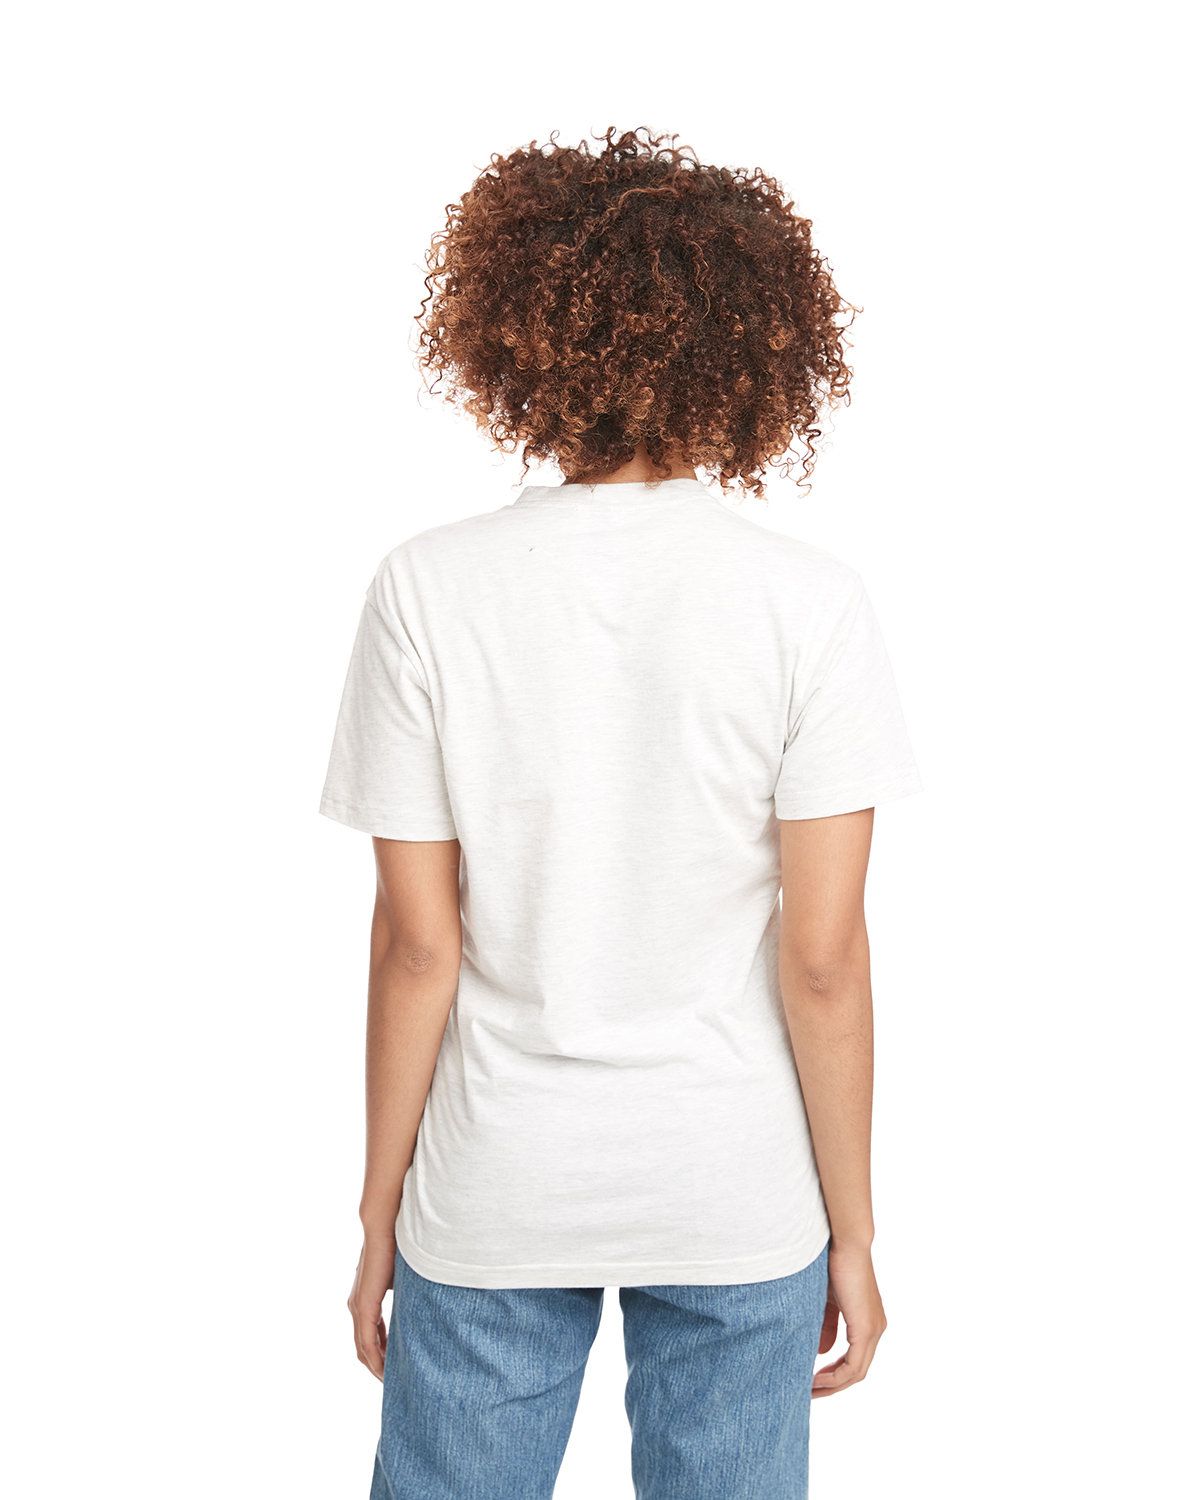 'Next Level 3600 Unisex Cotton T-Shirt'